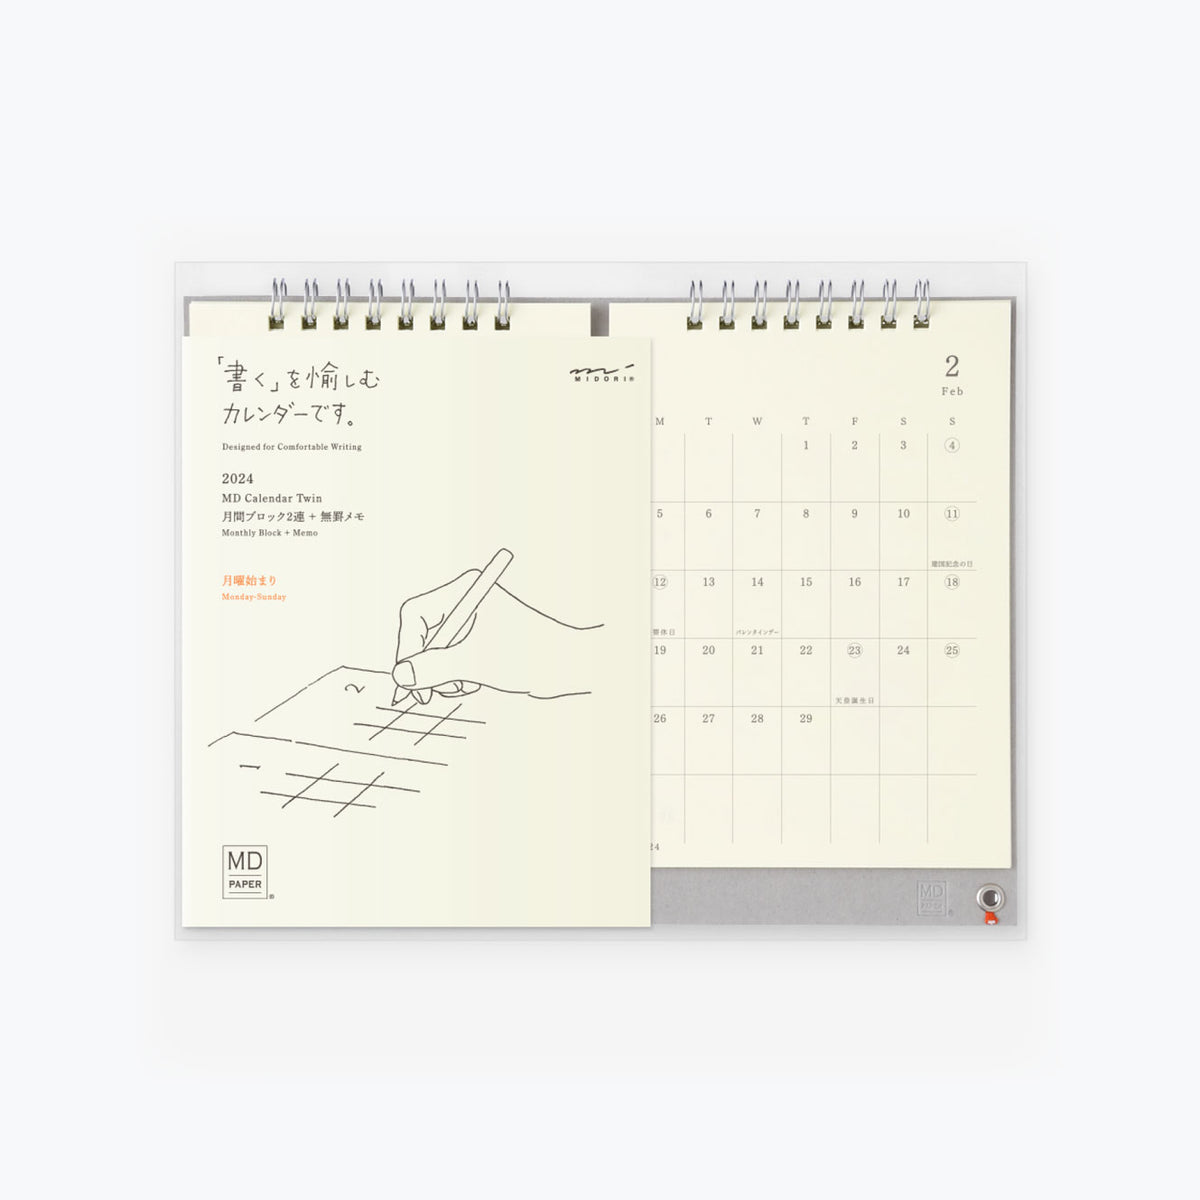 Midori - 2025 Calendar - MD Twin